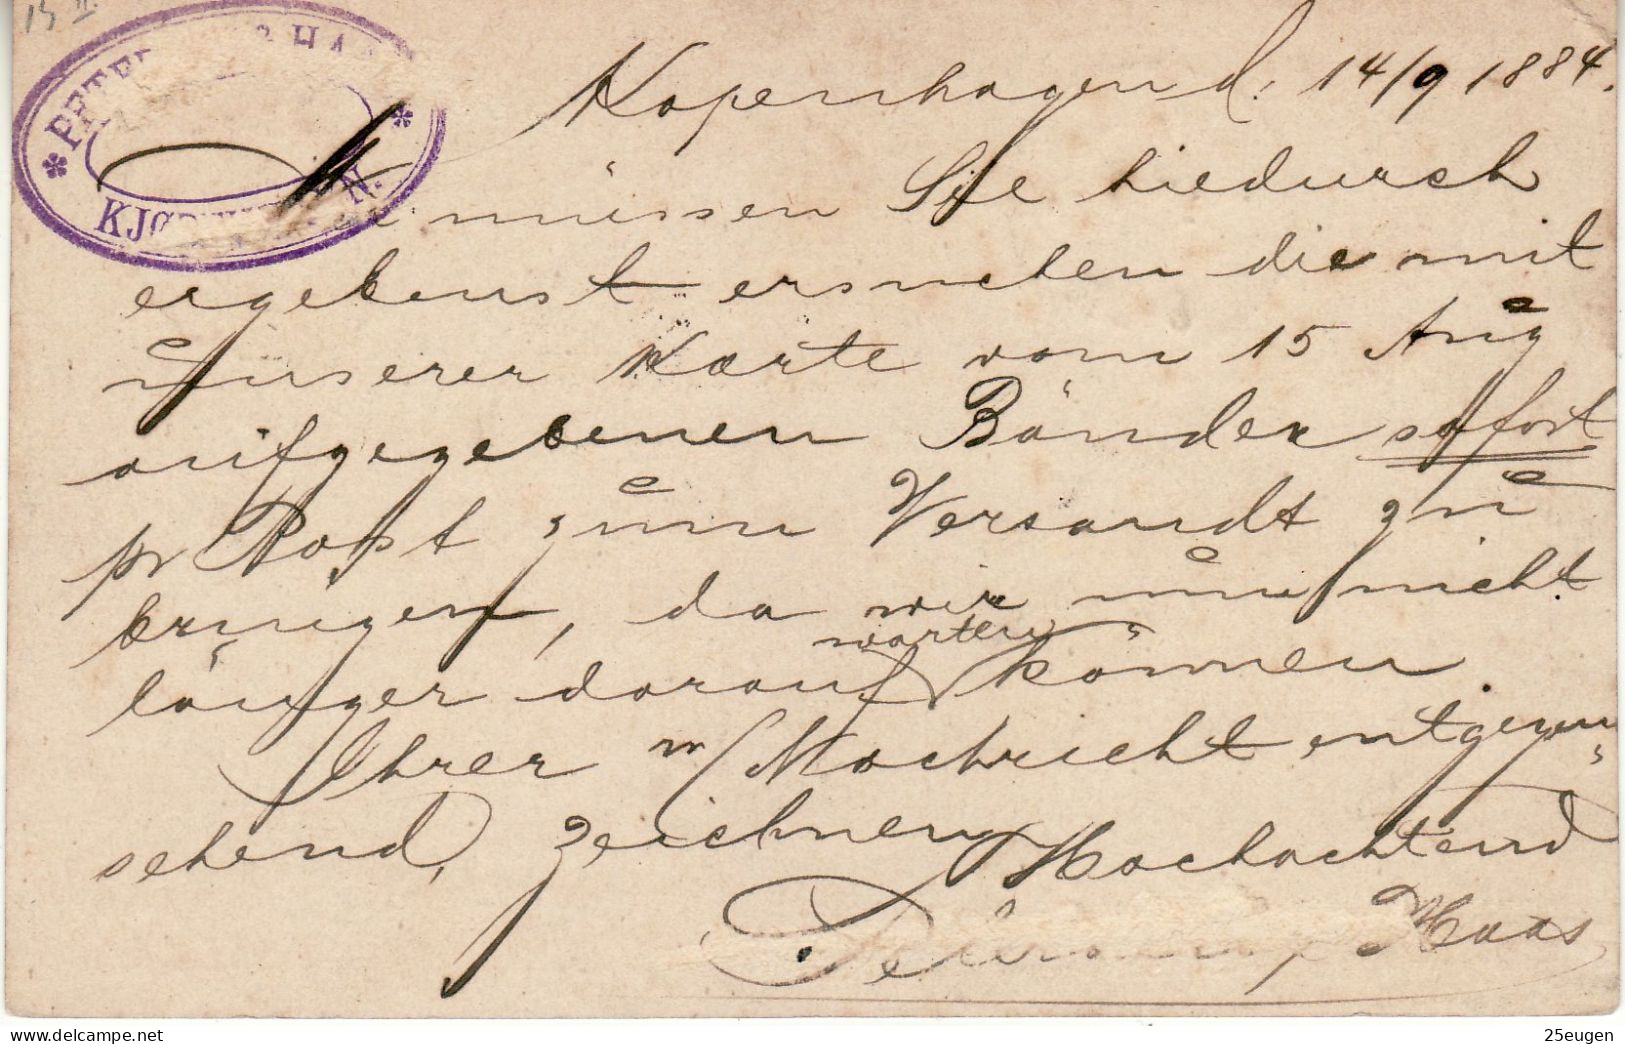 DENMARK 1884 POSTCARD SENT FROM KOPENHAVN TO BARMEN - Enteros Postales